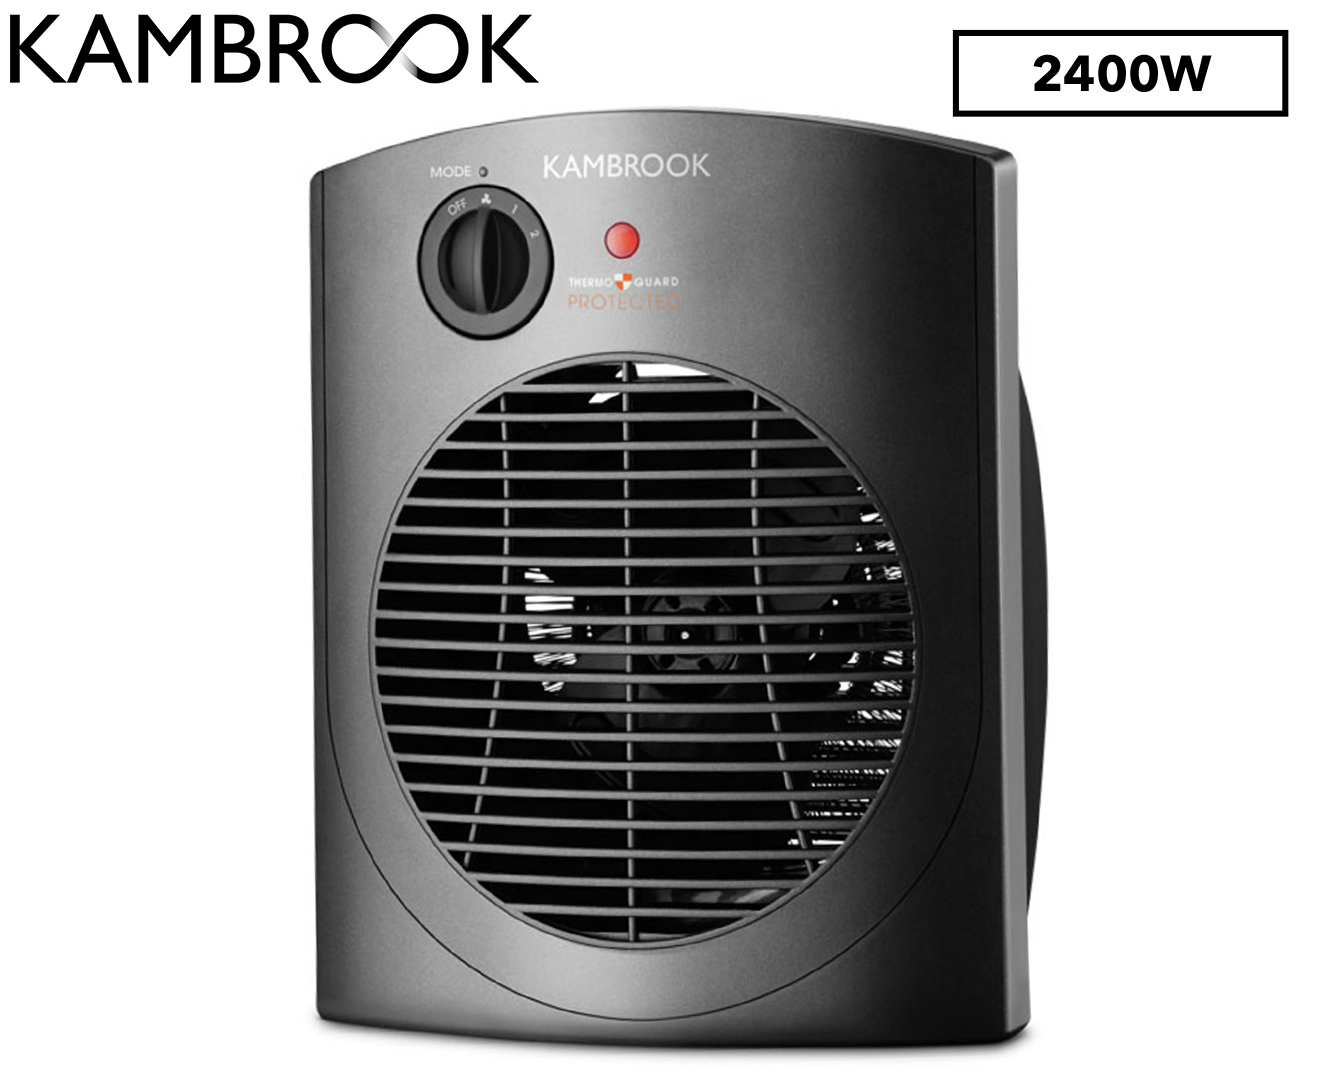 Kambrook 2400w Upright Fan Heater Kfh660 inside proportions 1320 X 1080